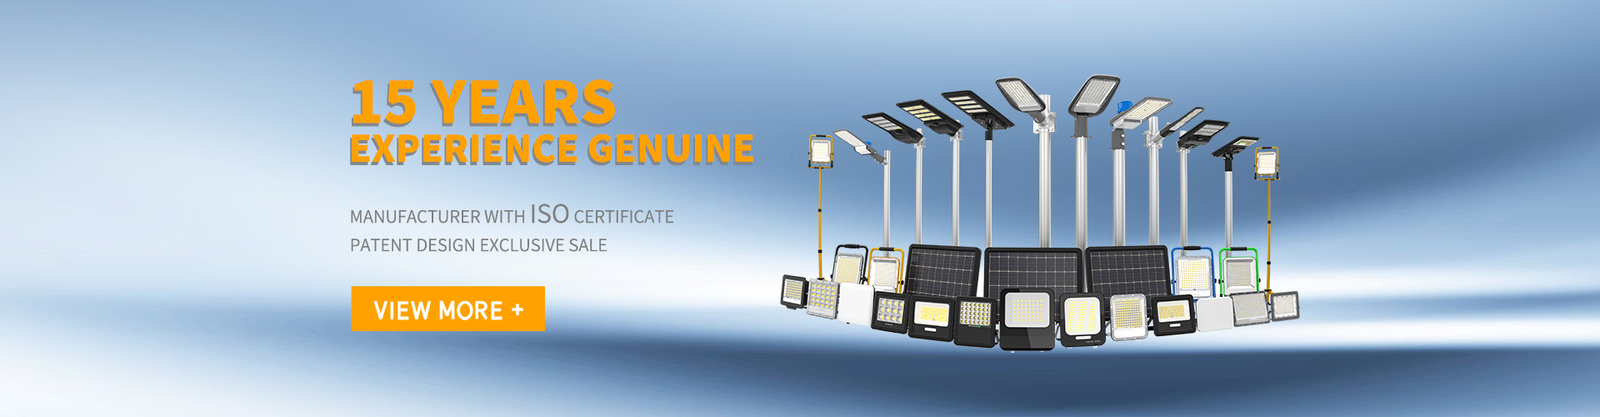 ποιότητας ηλιακοί τροφοδοτημένοι οδηγημένοι φωτεινοί σηματοδότες εργοστάσιο